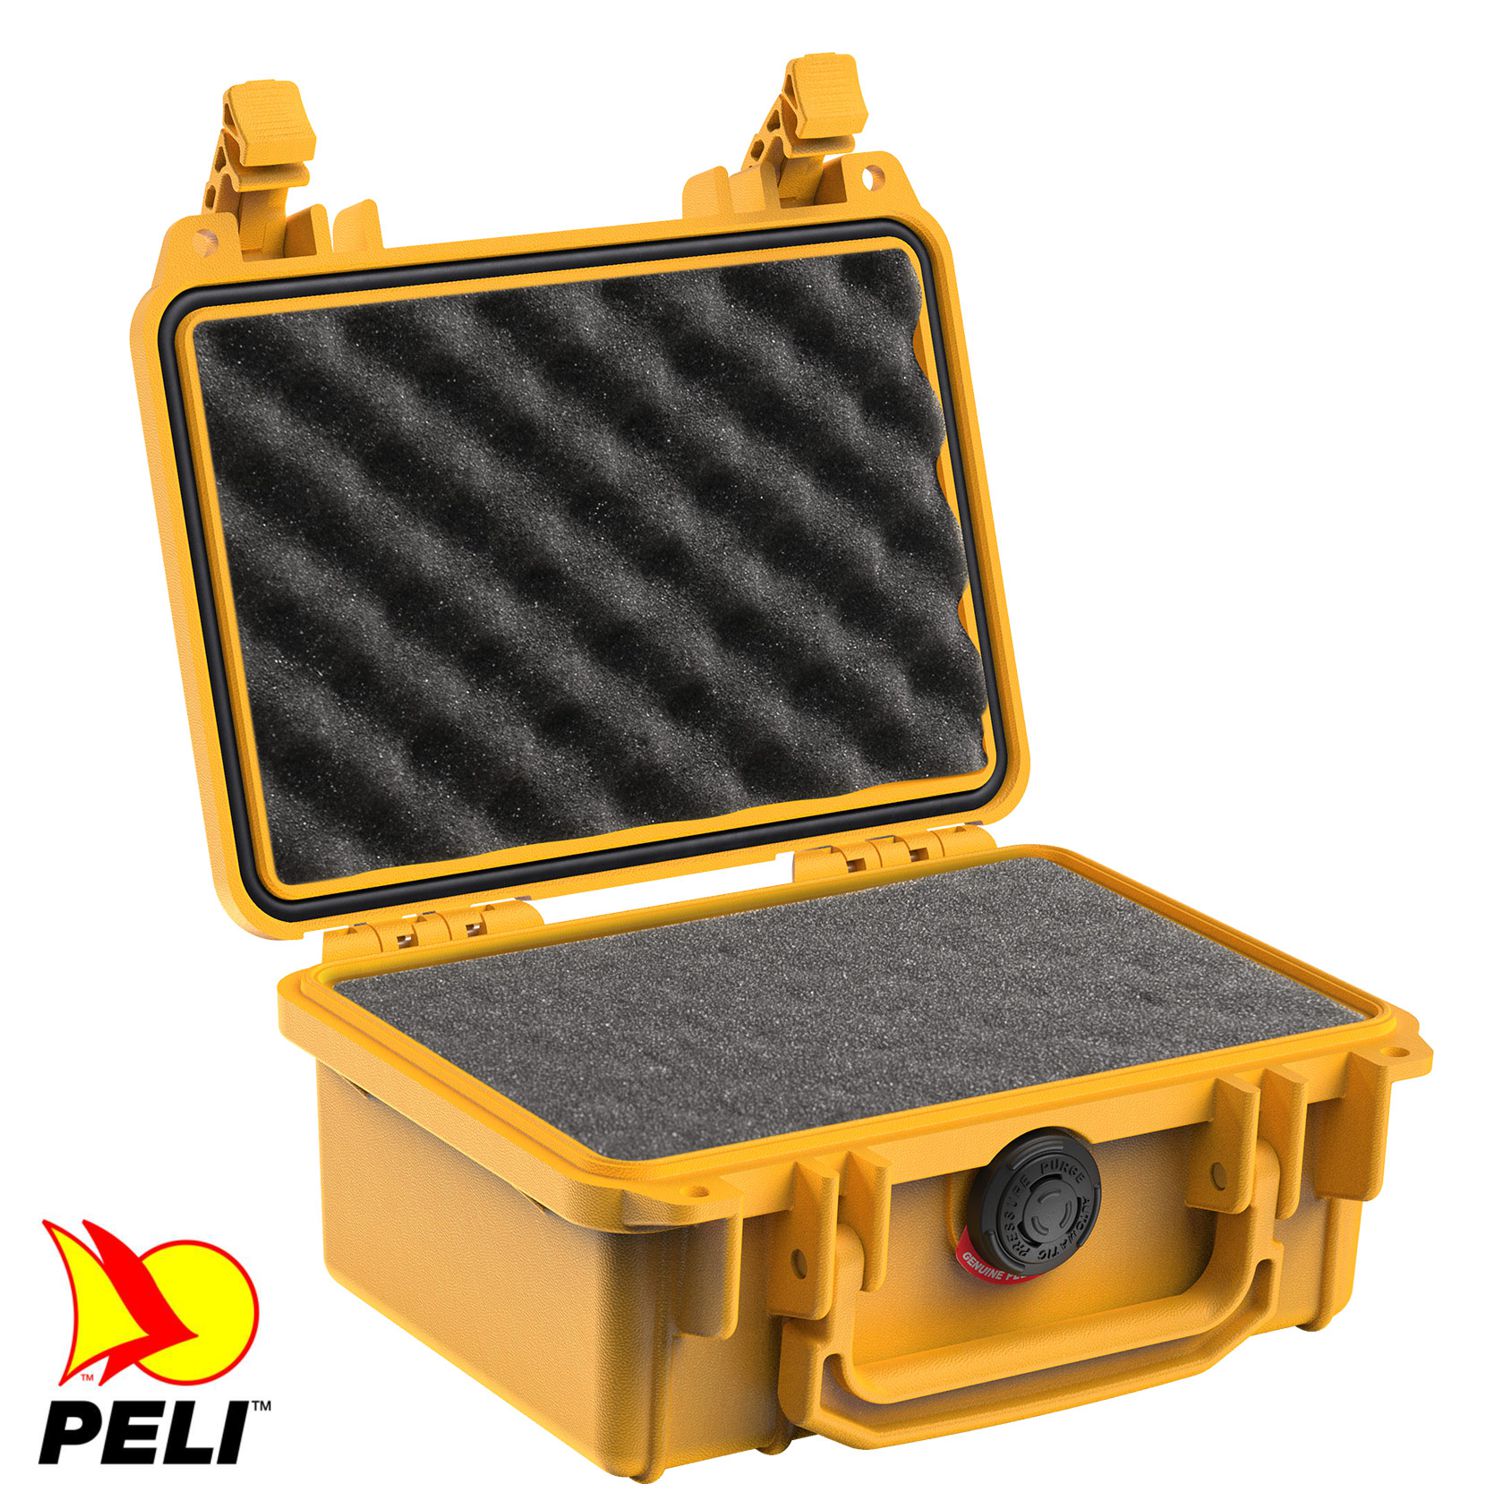 Peli 1120 Koffer, Case gelb mit Würfelschaum